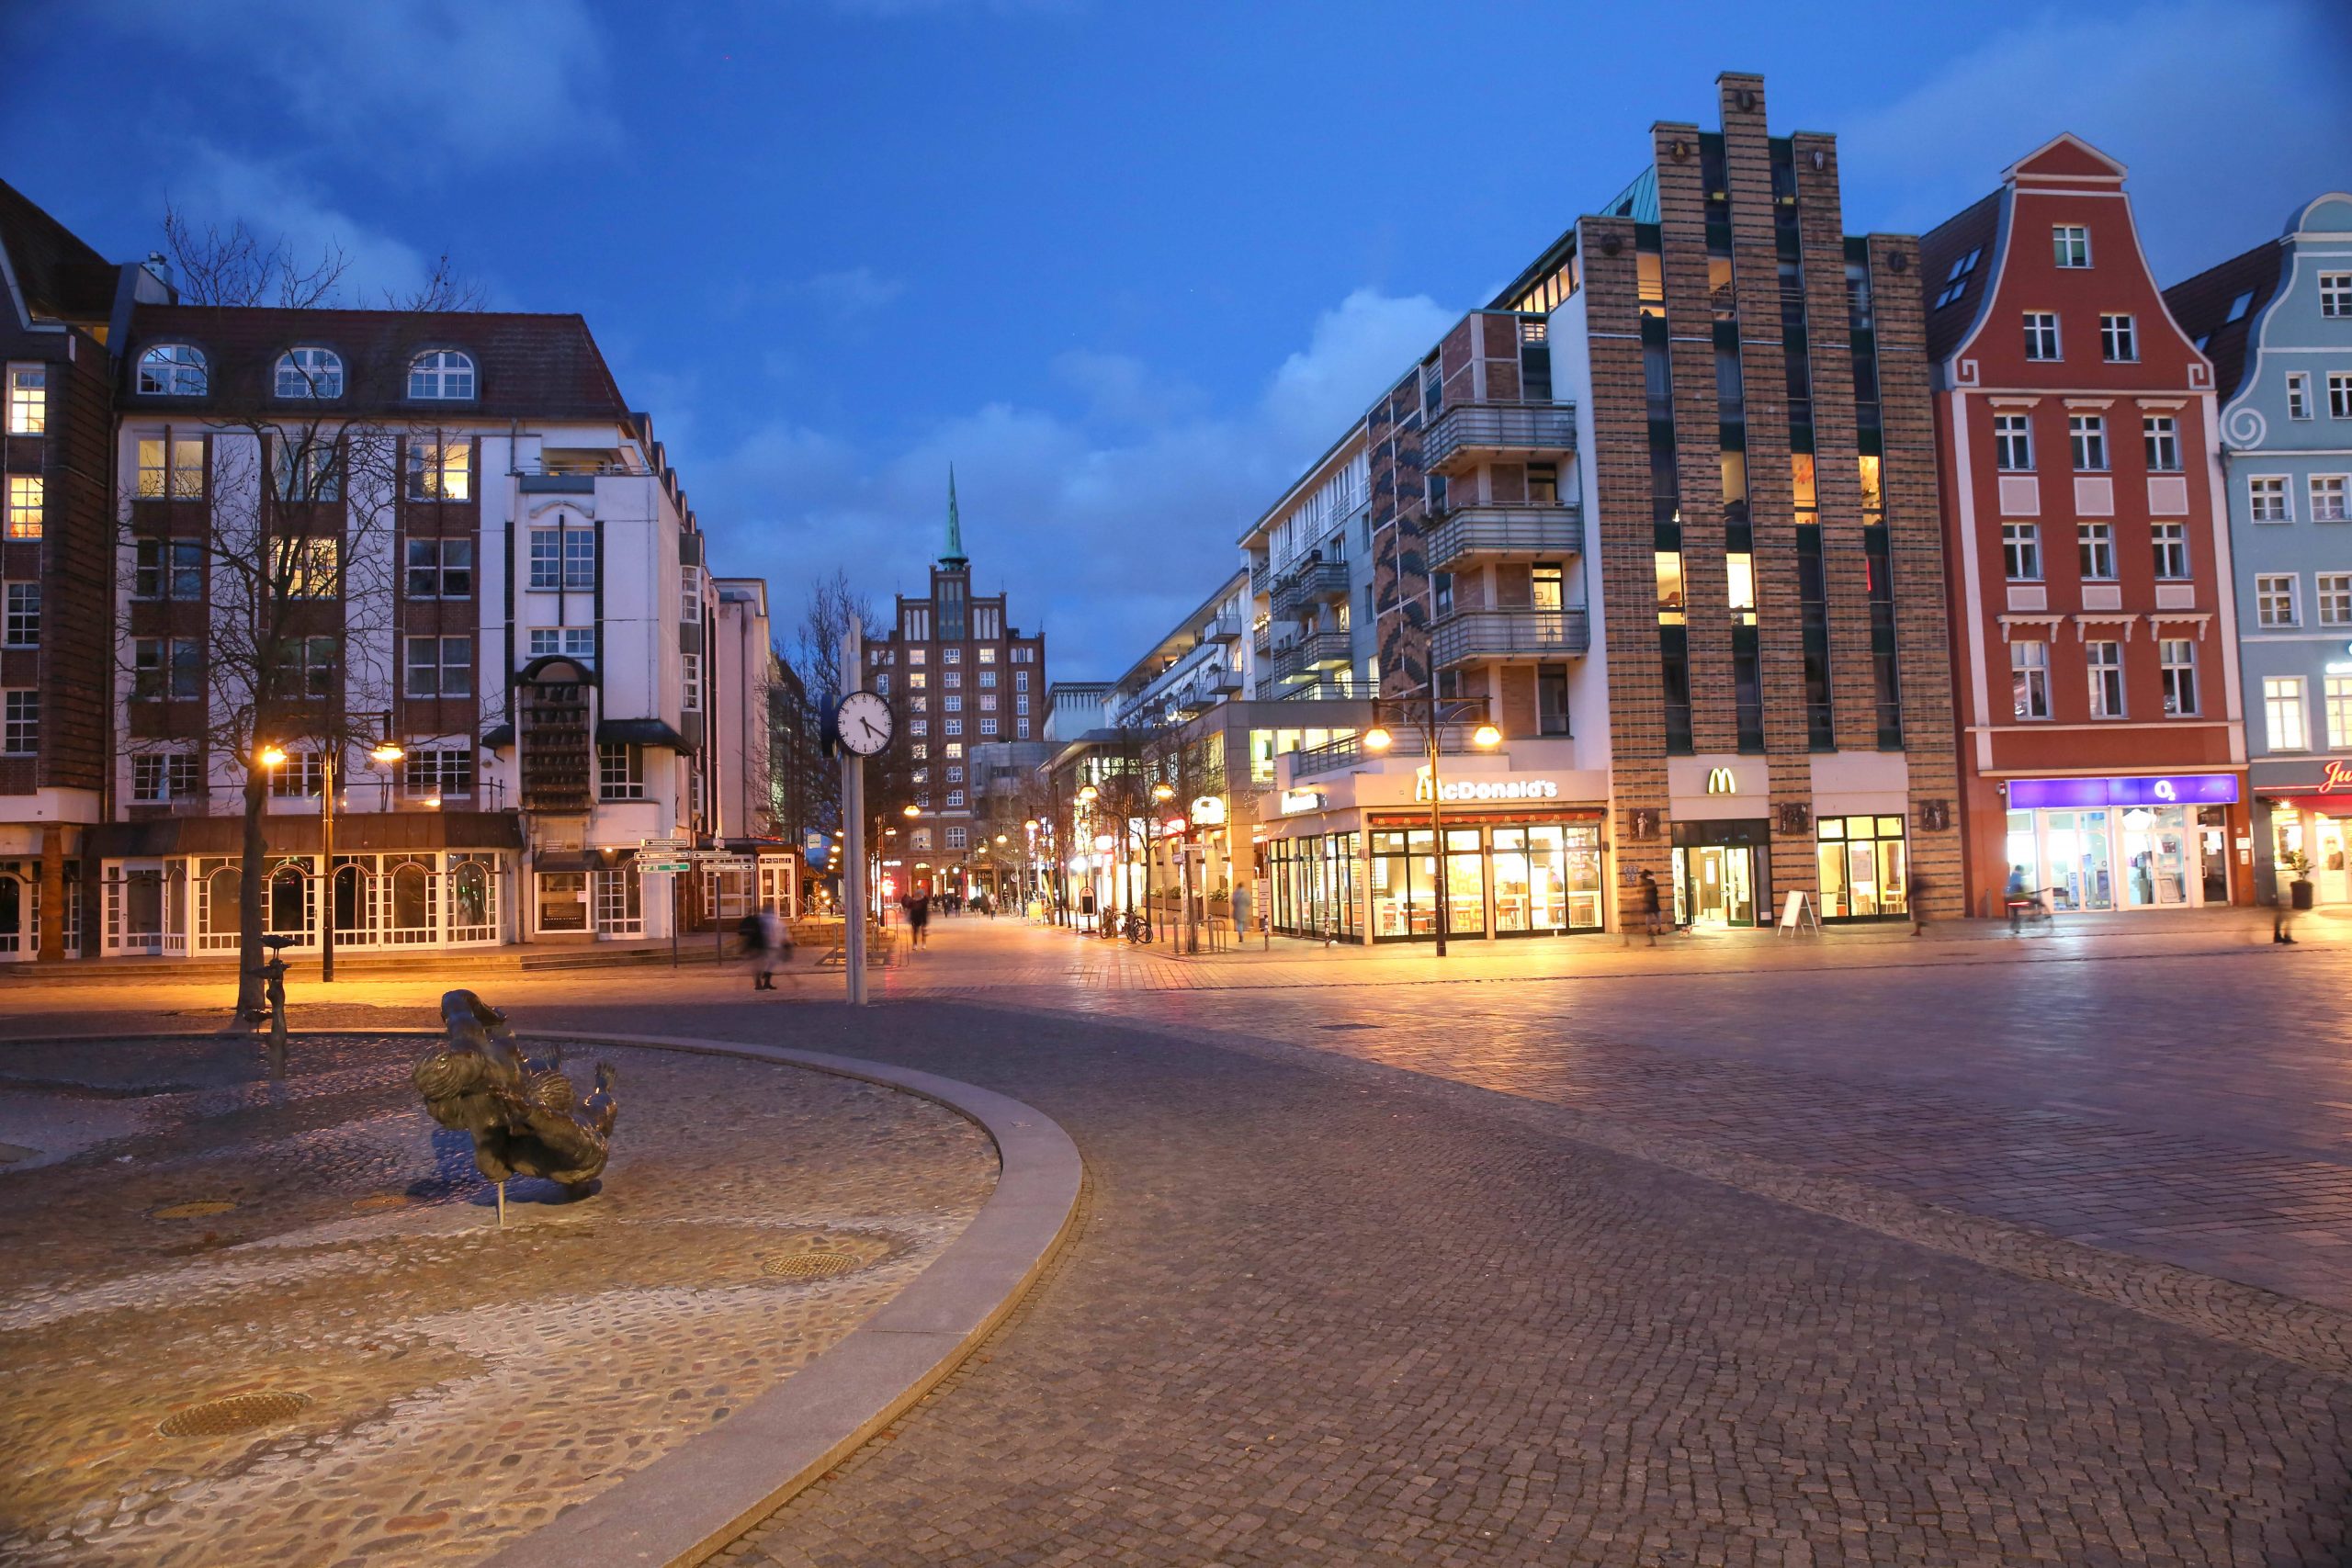 Abendlicher Blick auf das Stadtzentrum von Rostock.